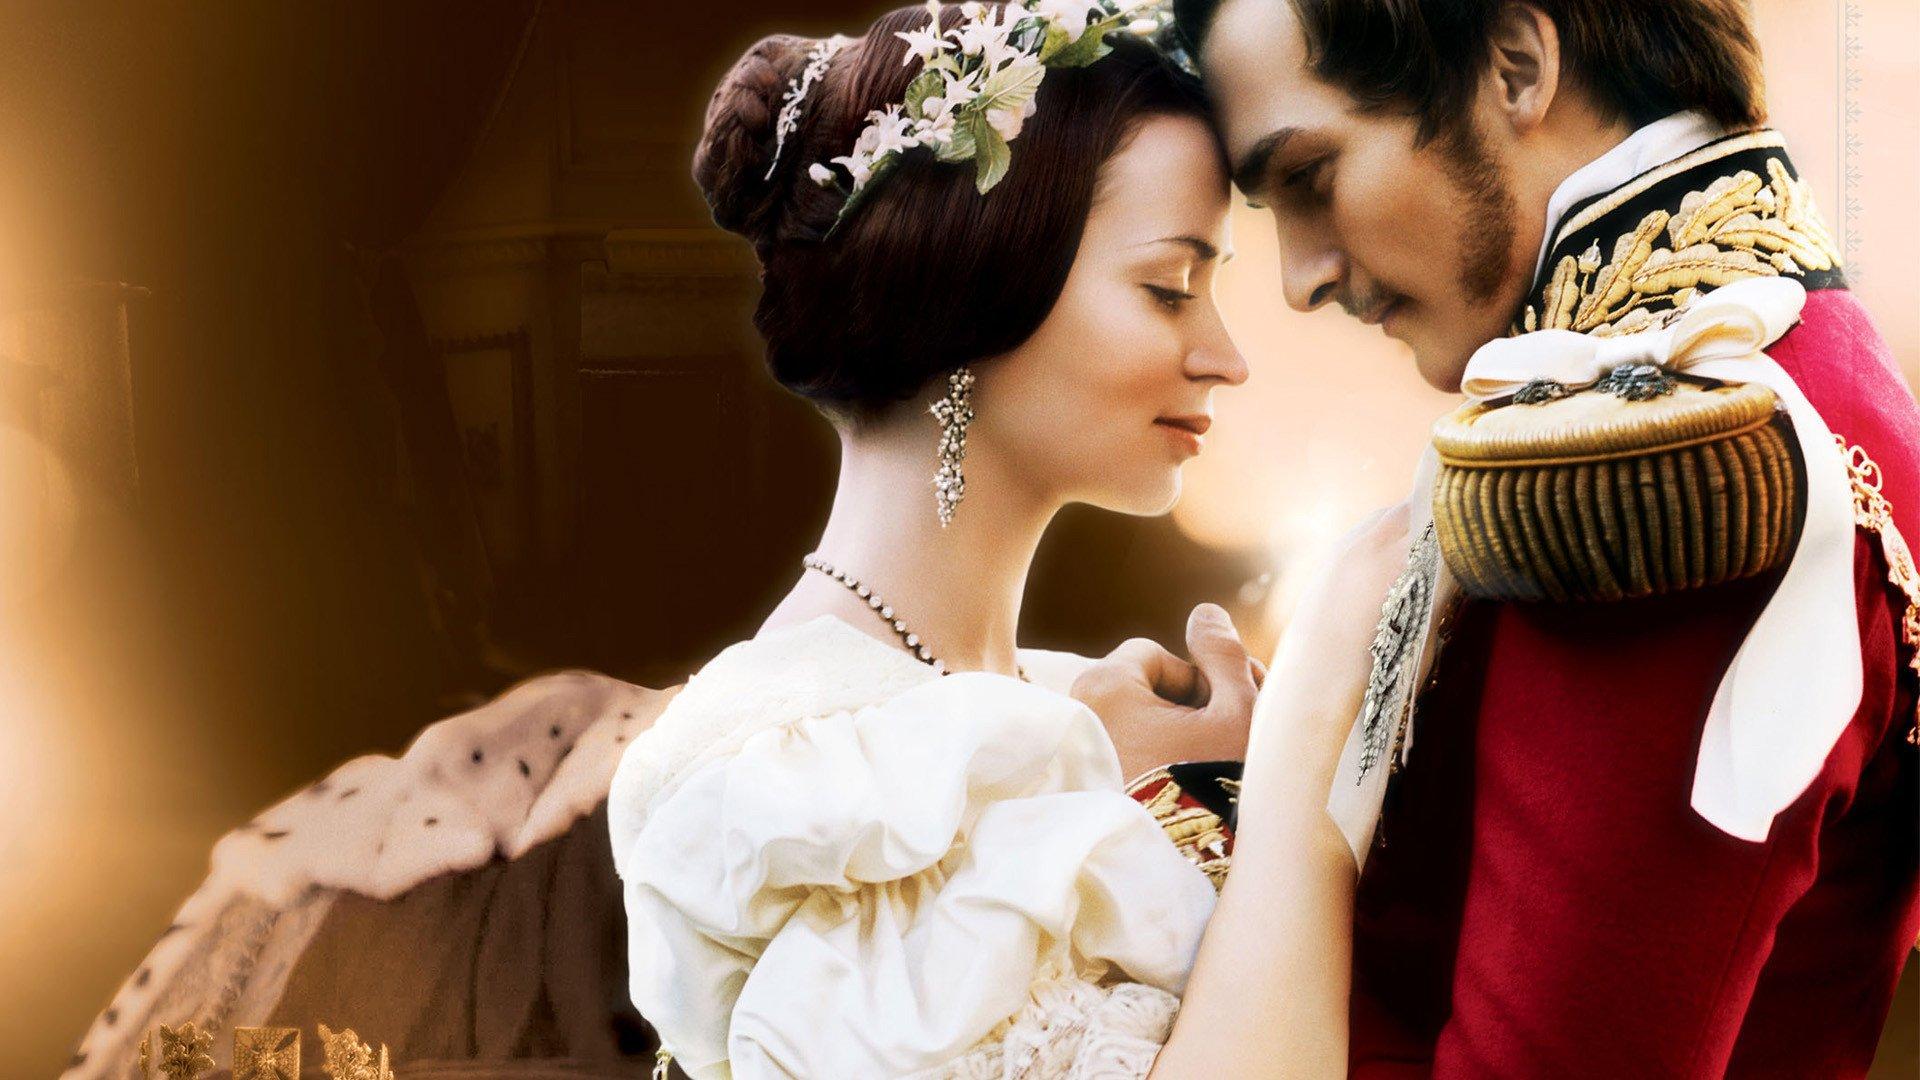 "ايميلي بلانت" - افضل 10 افلام للملكة البريطانية علي الإطلاق 4